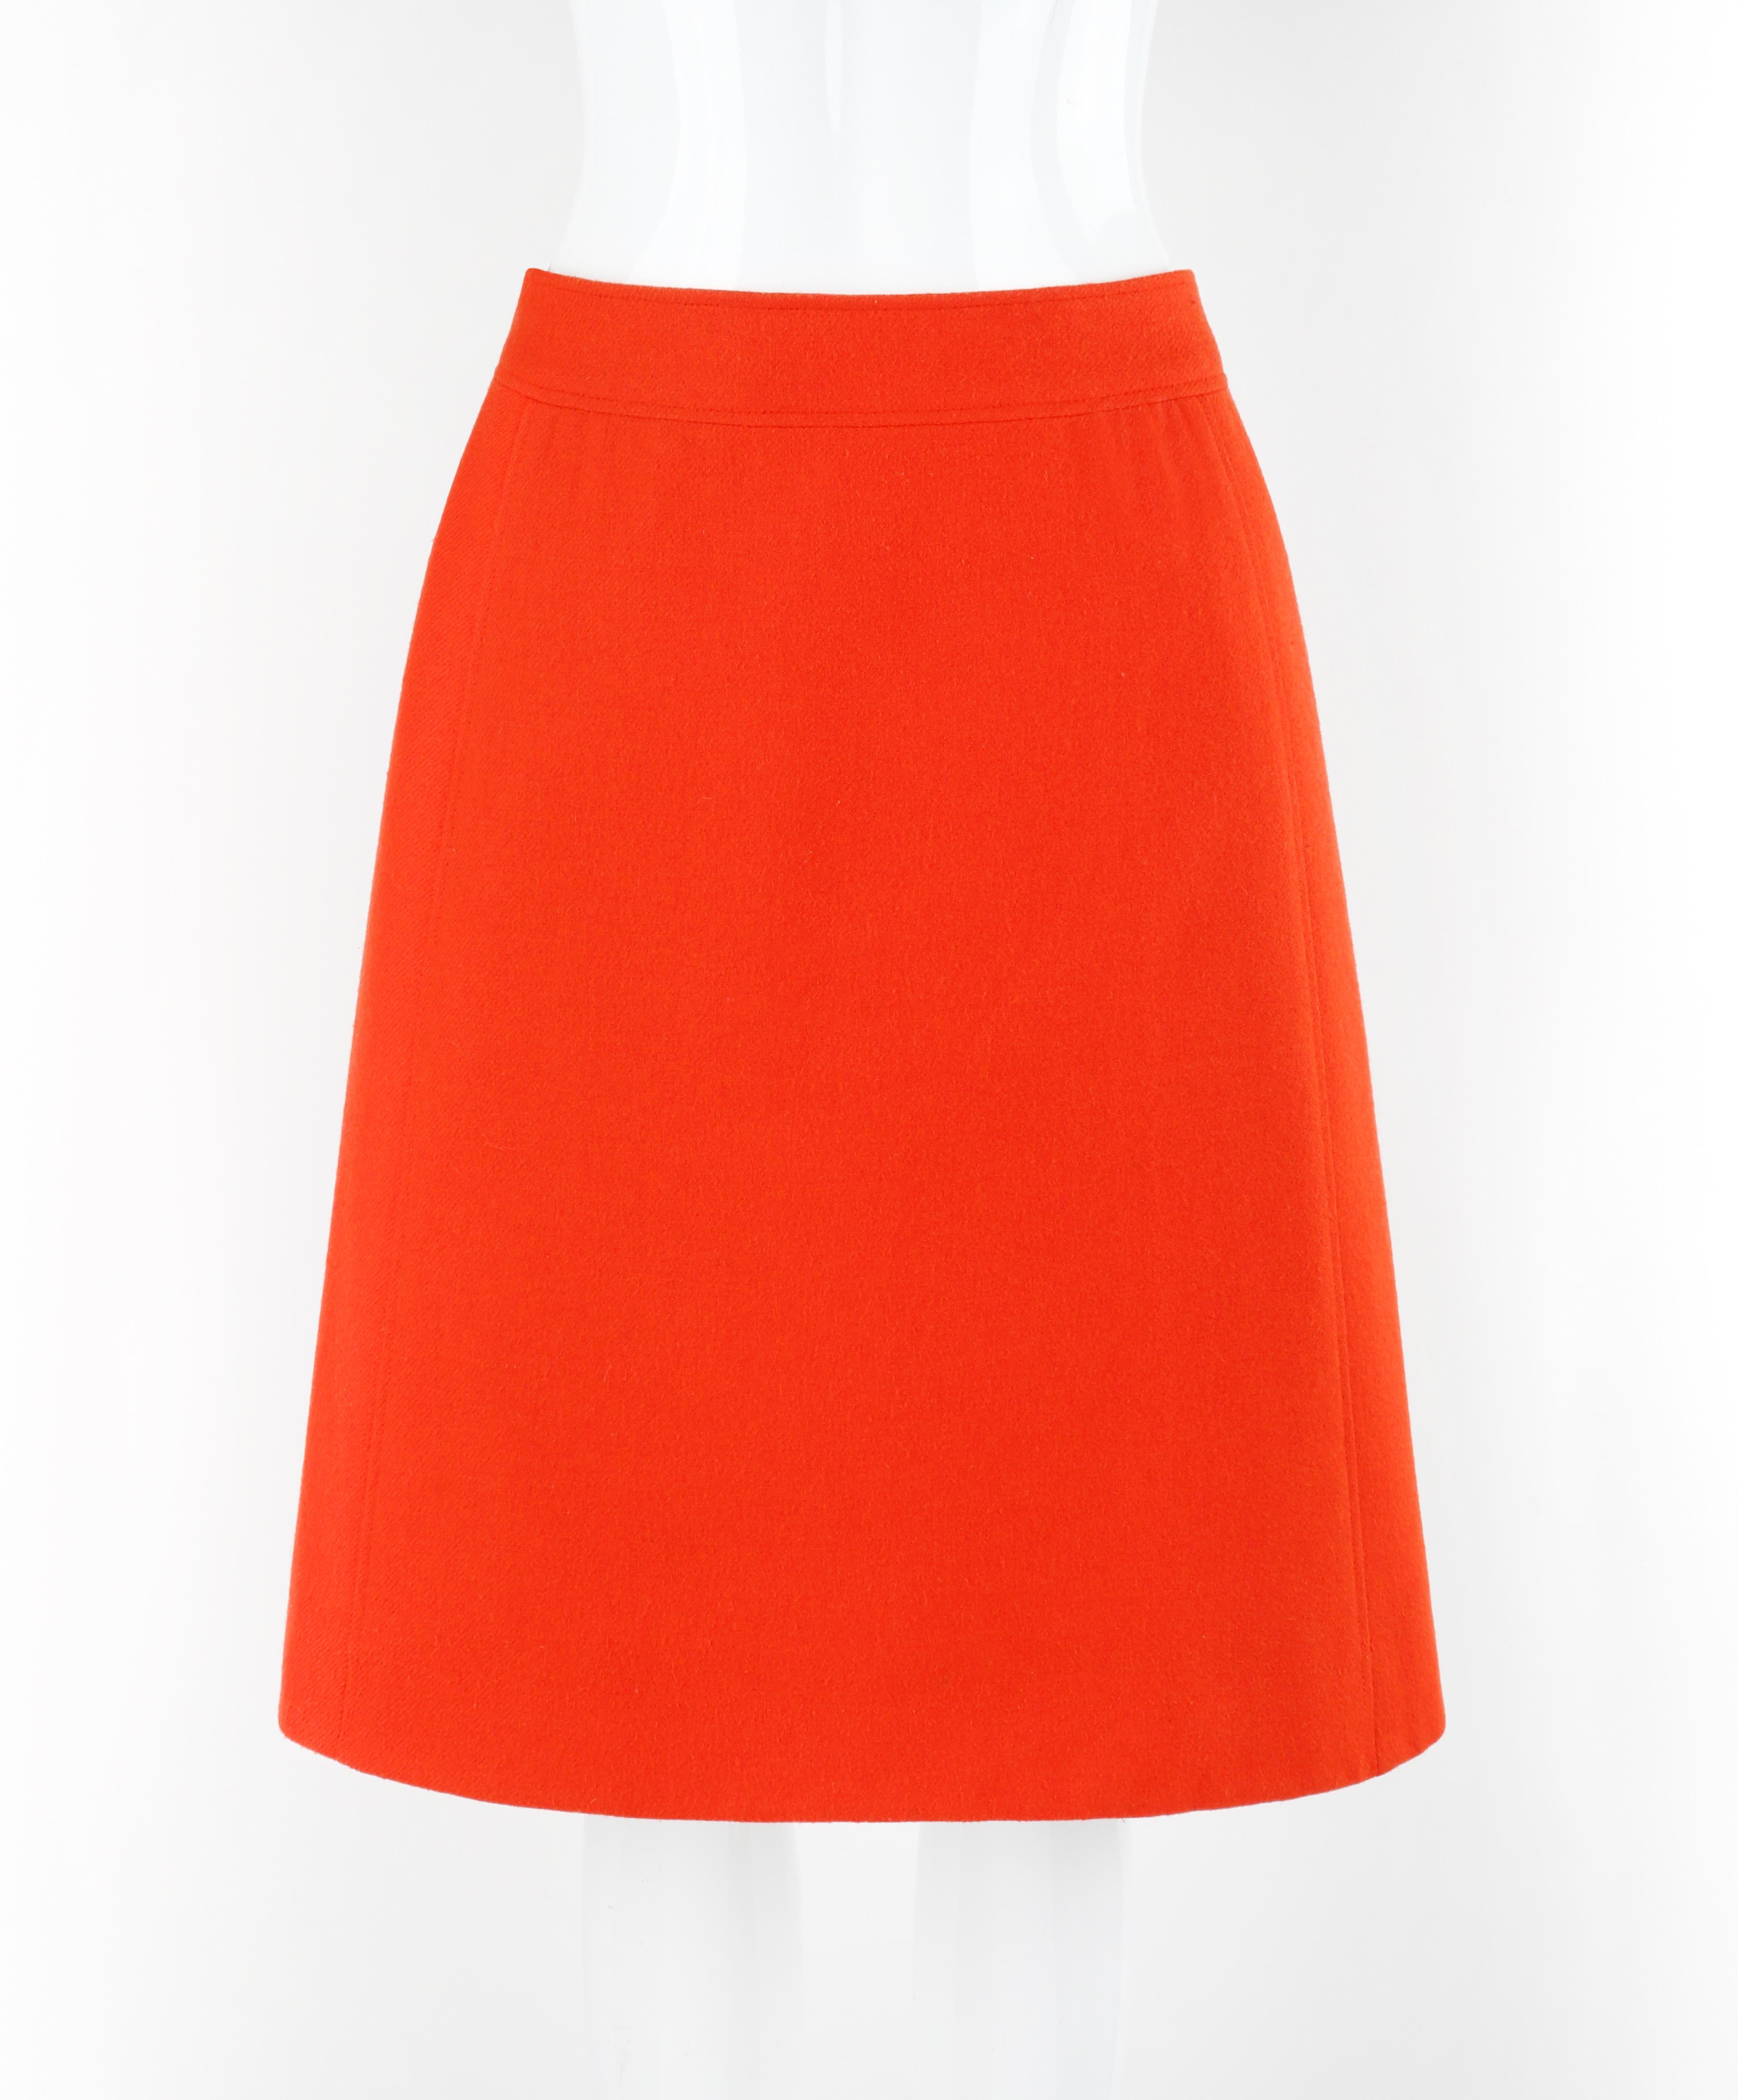 COURREGES c.1970's Orange Wool Lined Classic Tailored A-Line Knee Length Skirt

Marque / Fabricant : Courreges
Circa : 1970's
Label : Numéroté - 0042055
Designer : Andre Courreges
Style : Jupe A-Line longueur genou
Couleur(s) : Orange, blanc
Doublée